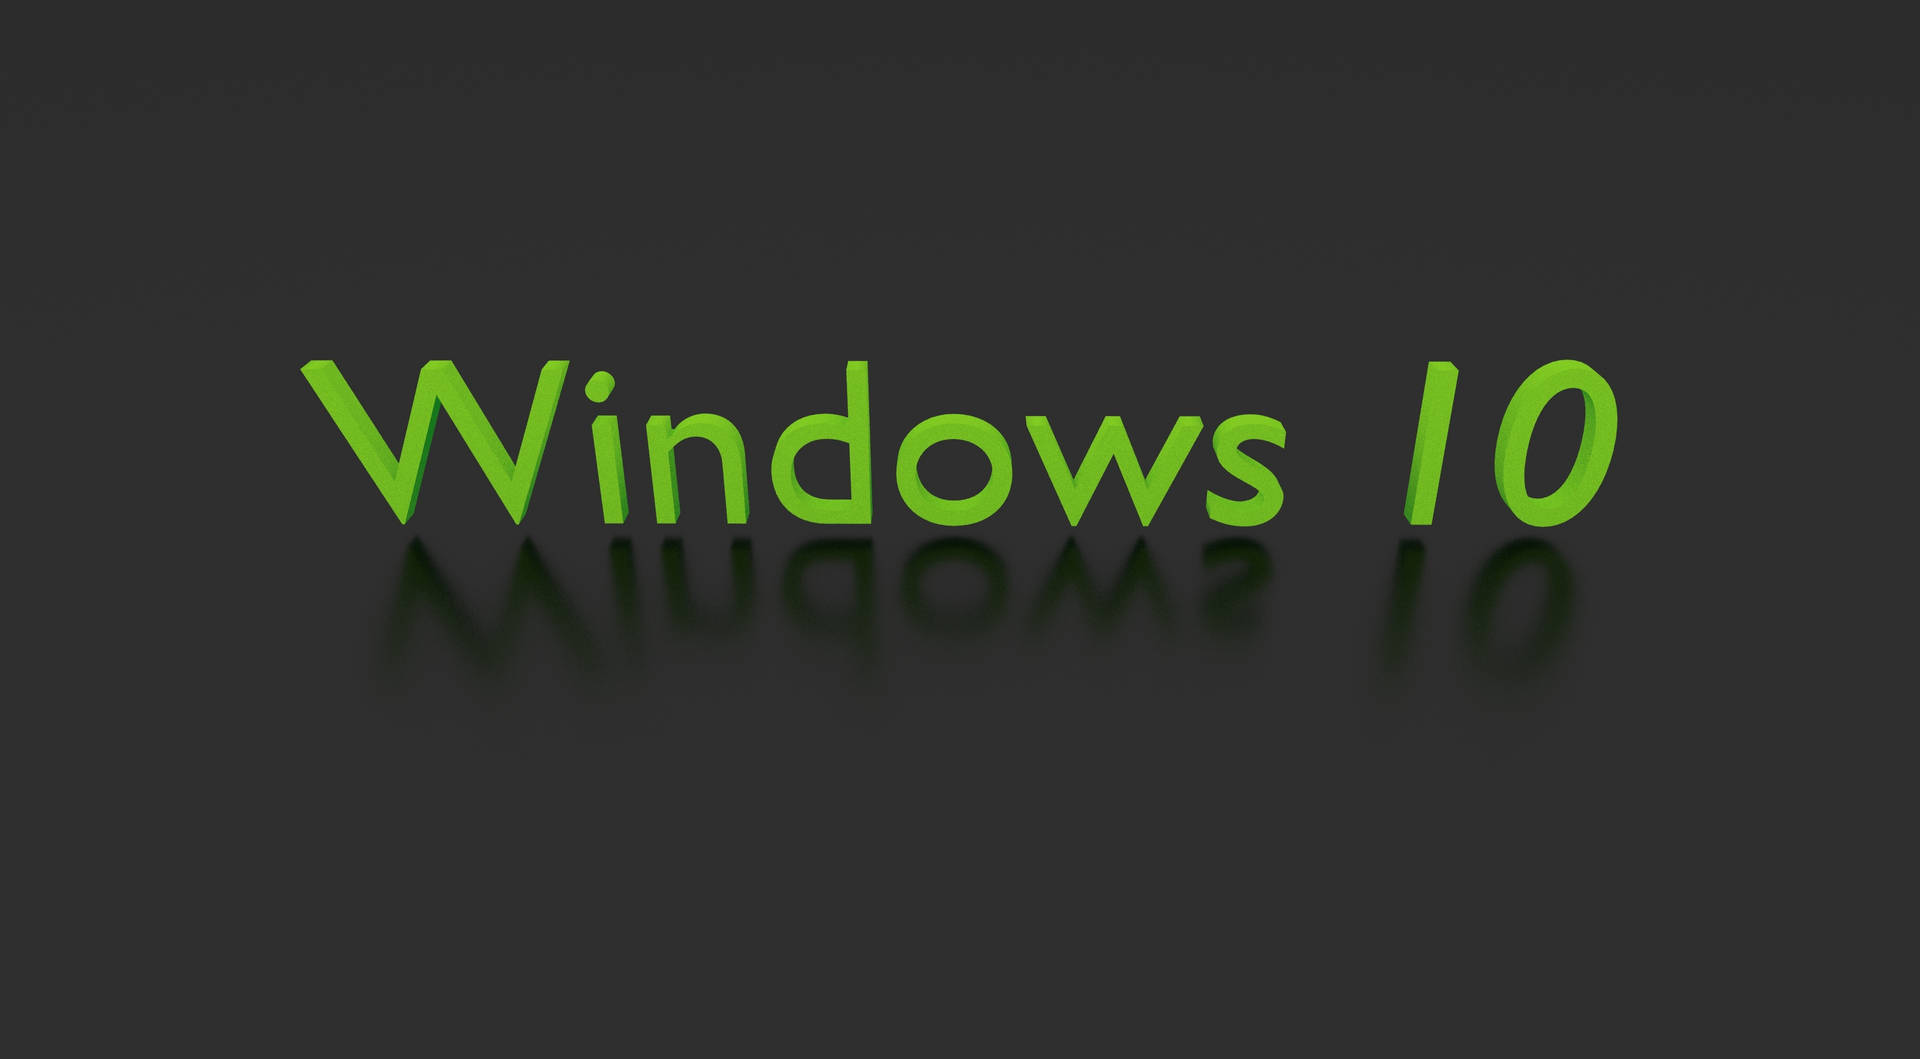 Den Gröna Windows 10 Hd-tapeten Kan Göra Din Dator- Eller Mobilskärm Väldigt Fräsch! Wallpaper